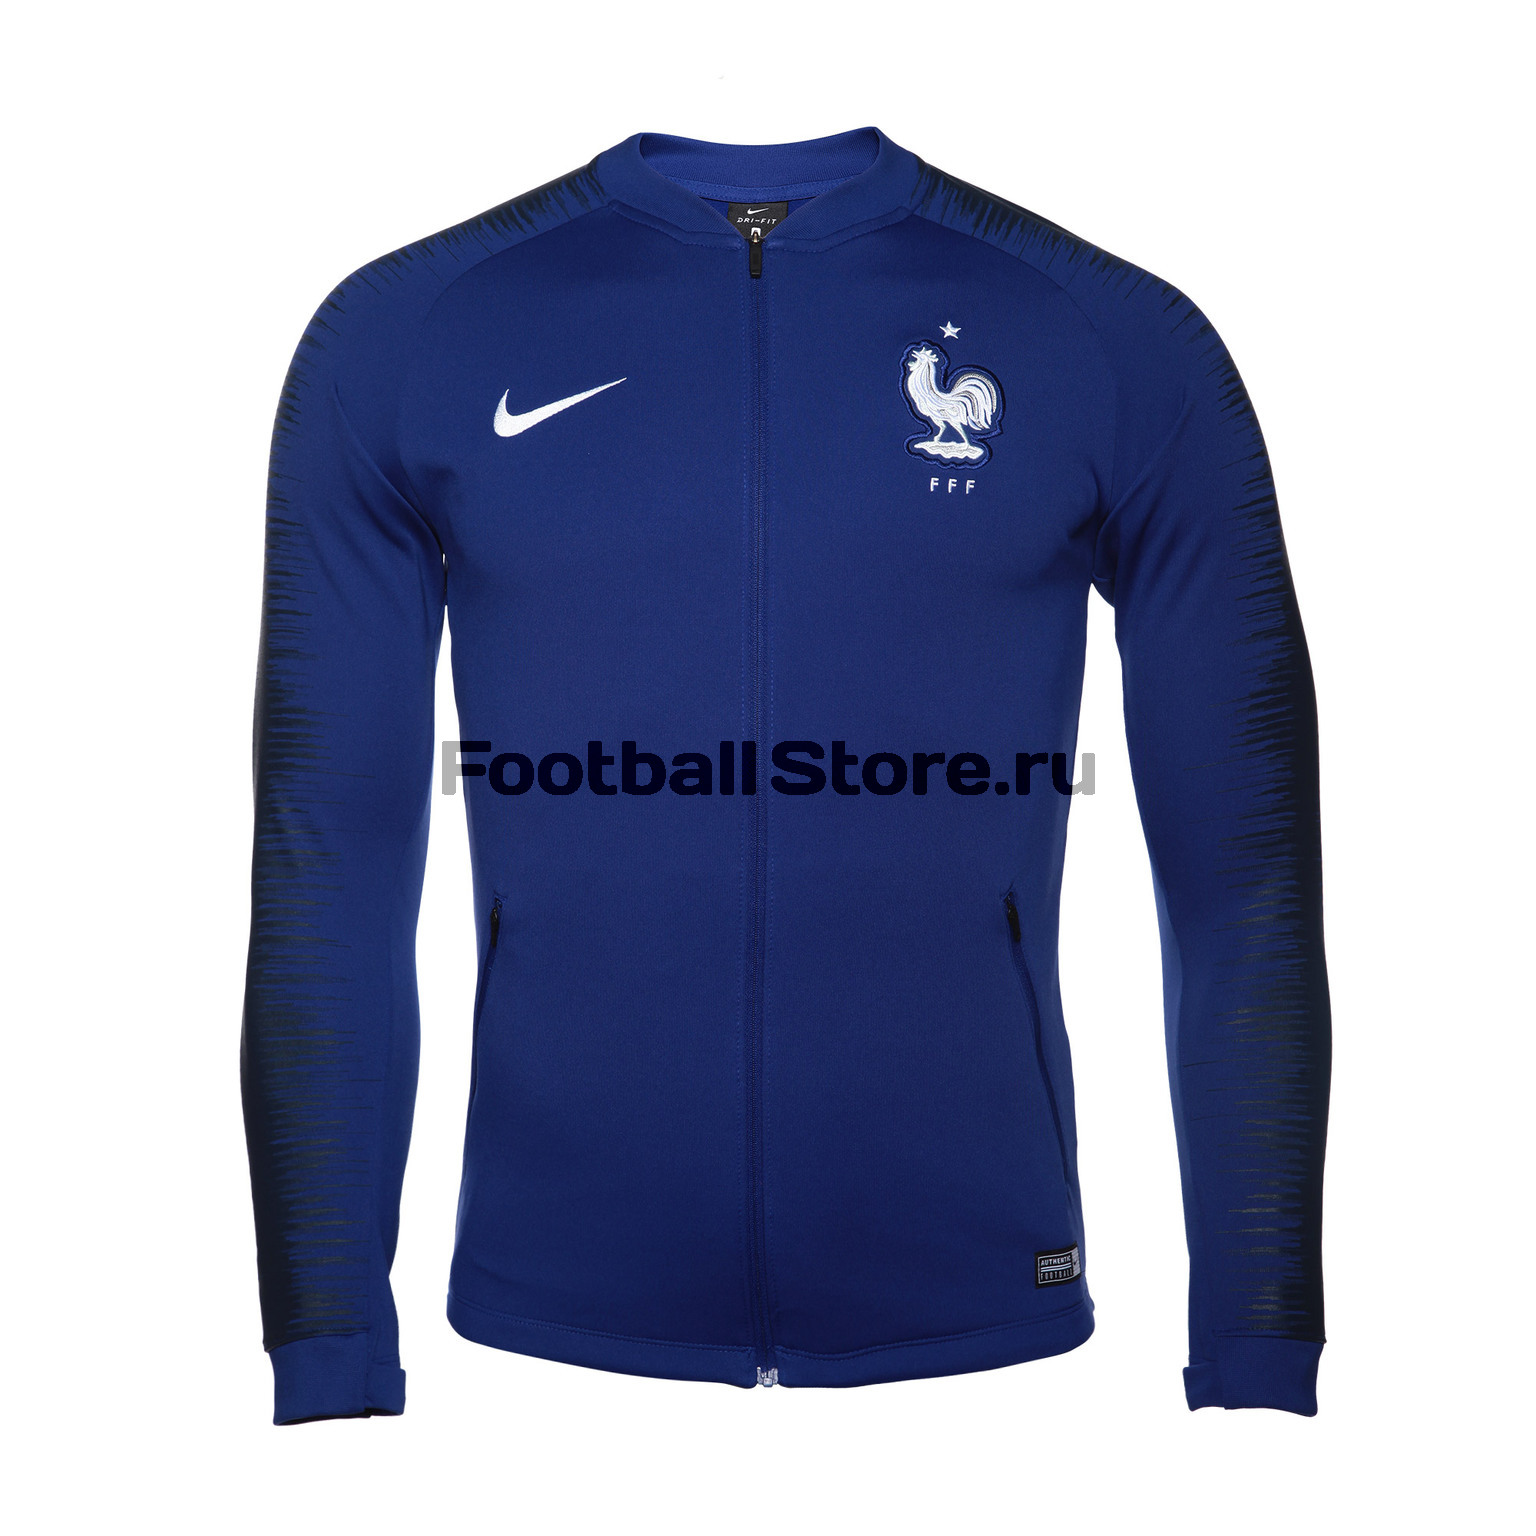 Олимпийка Nike сборной Франции 893590-455 